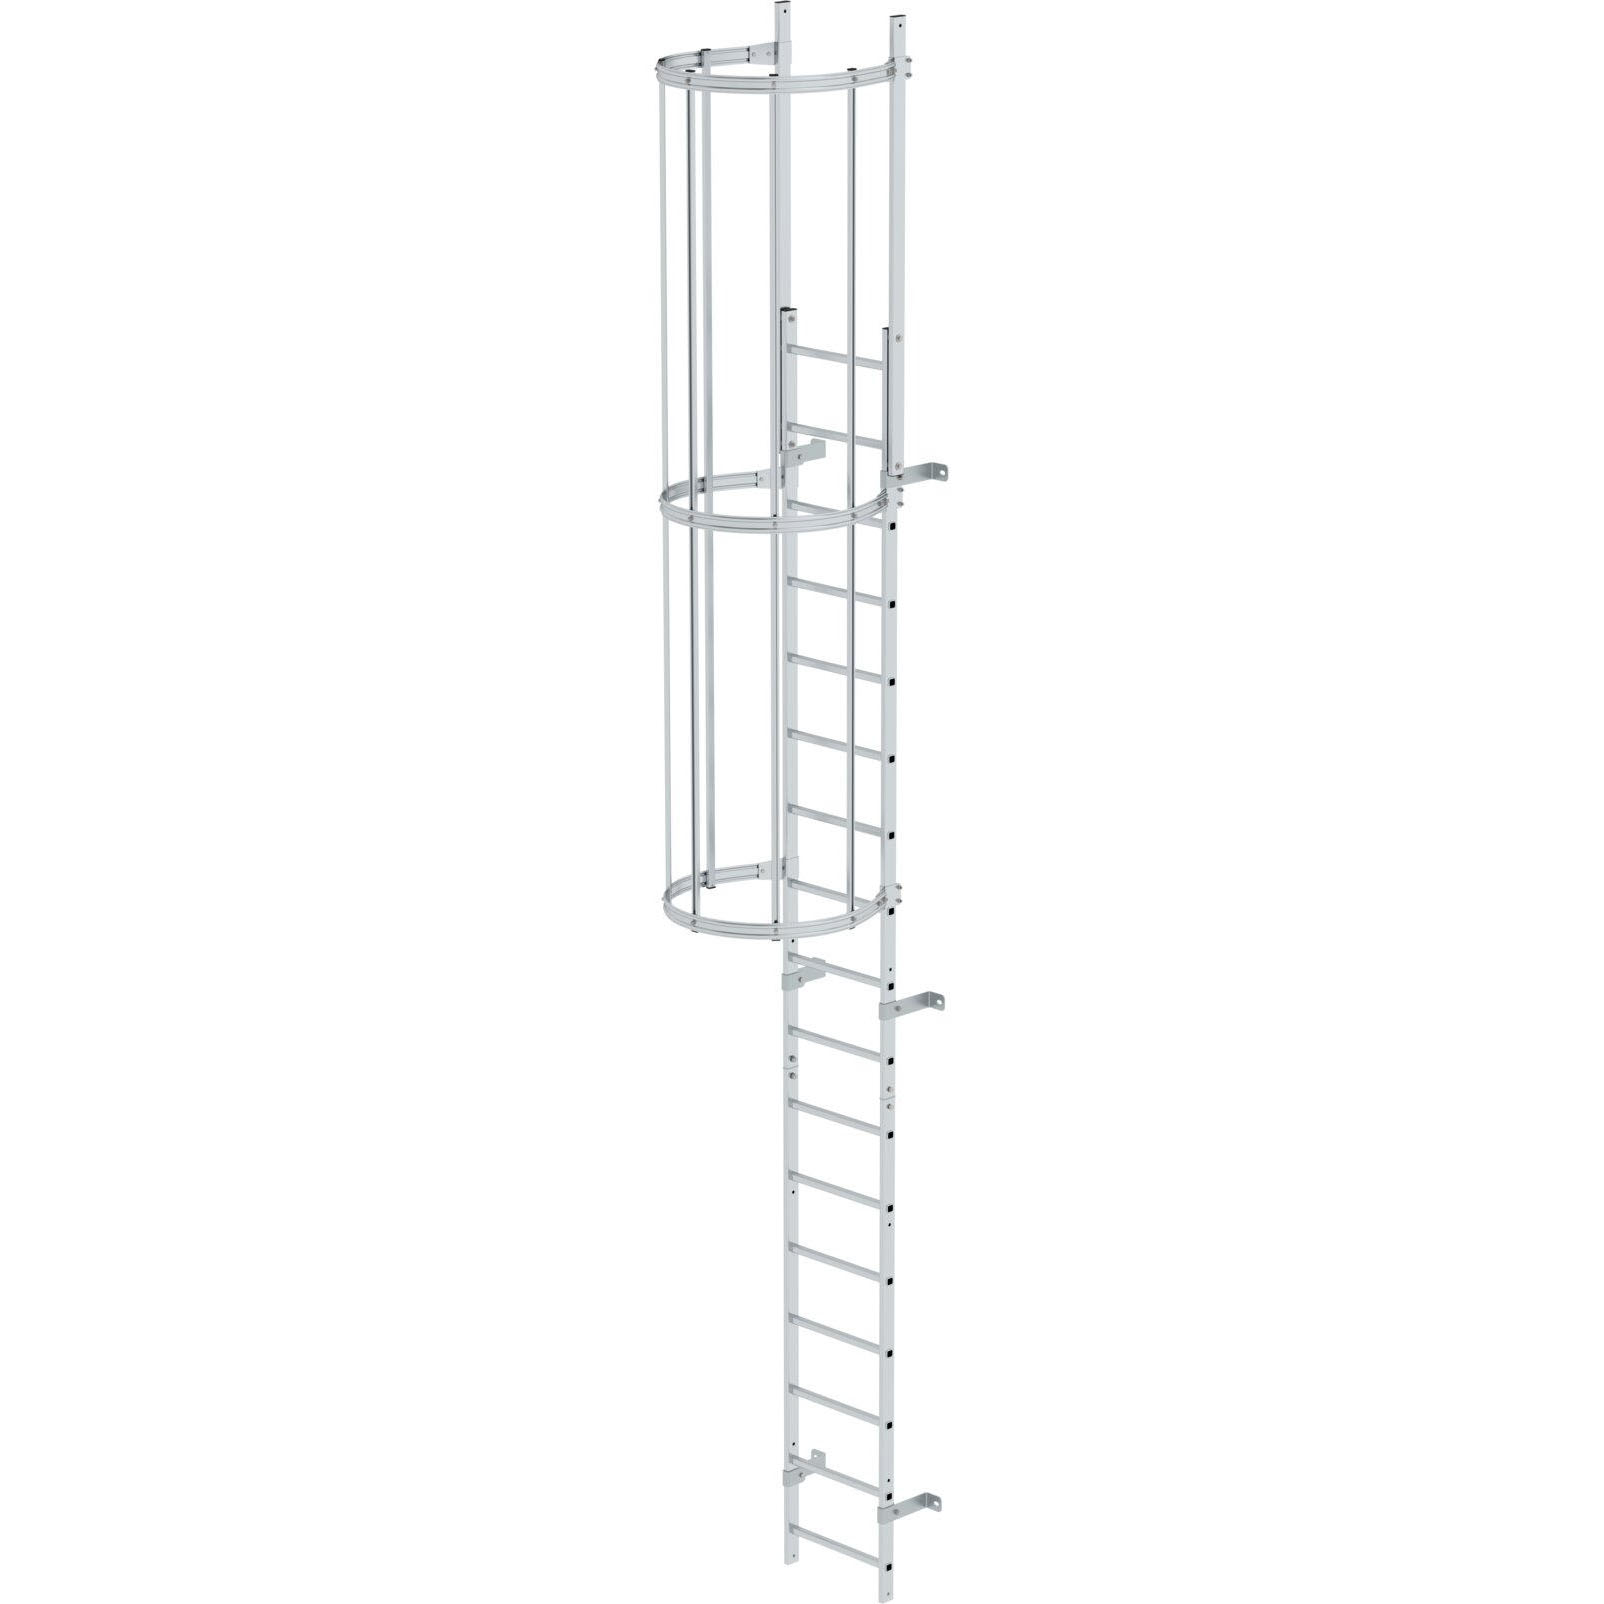 Однопролетная вертикальная лестница из пол. алюминия 5.96 м Munk 510100